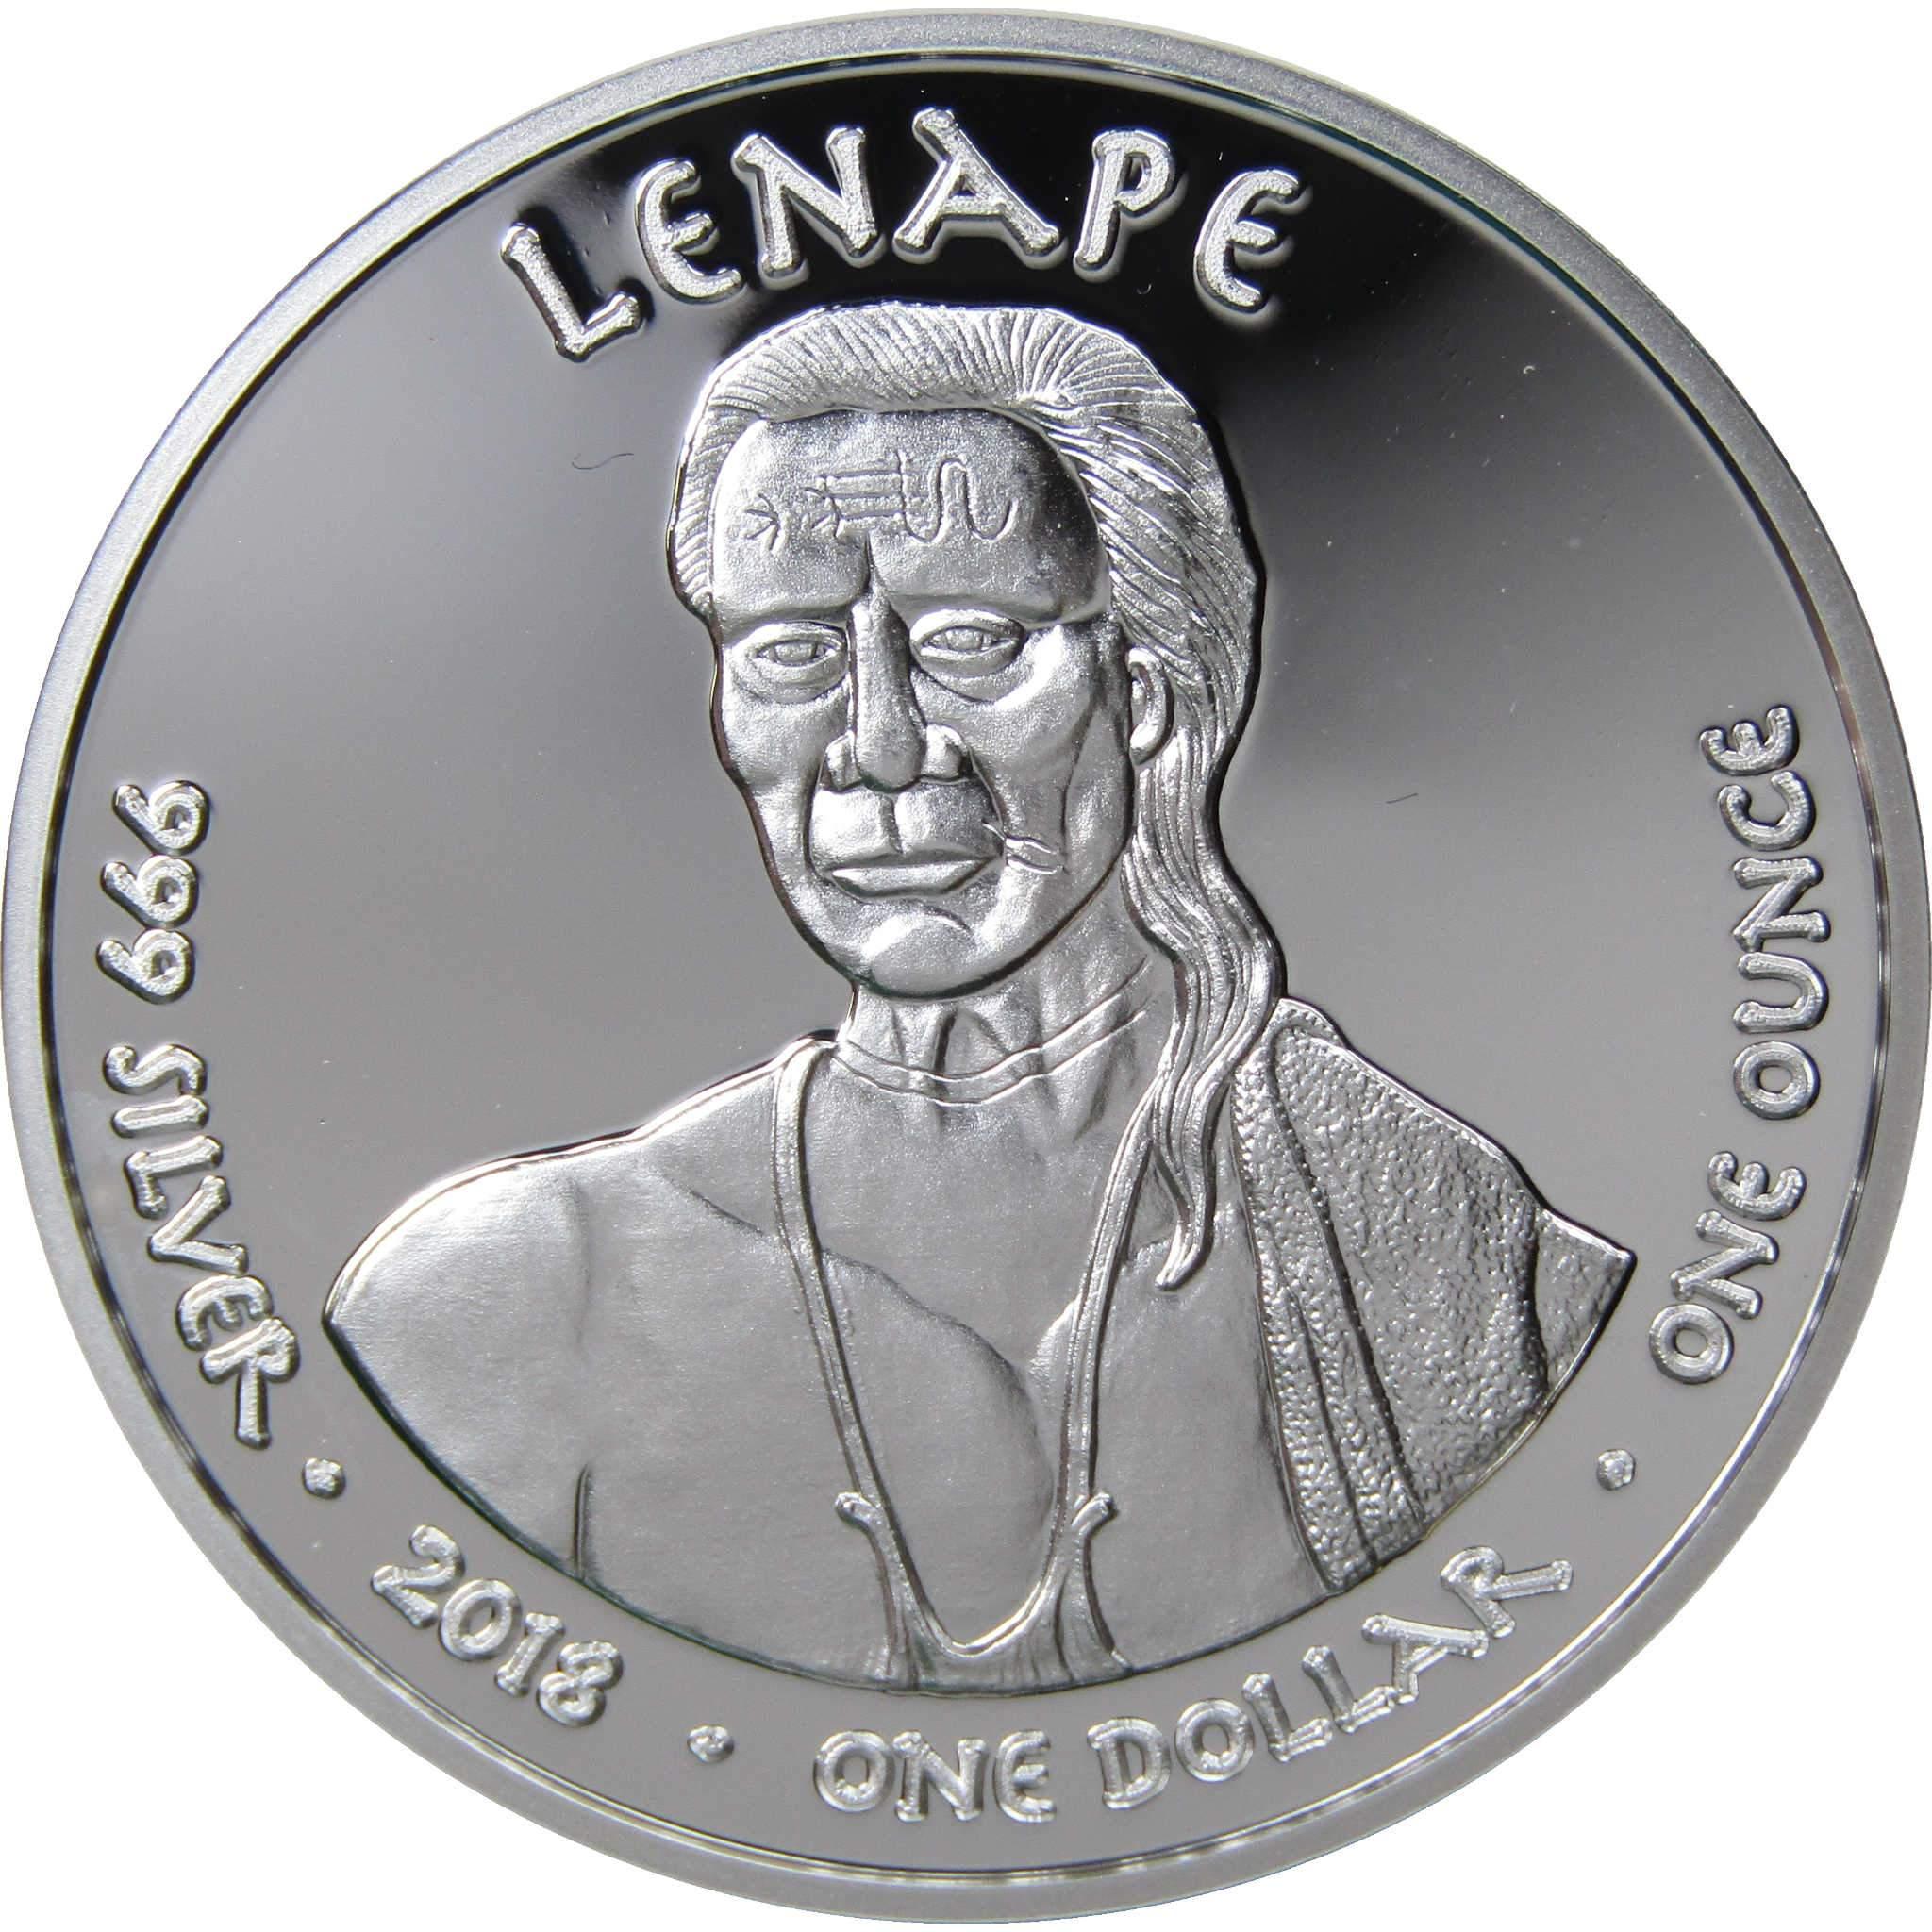 2018 Native American Jamul Lenape Horse 1 oz .999 Fine Silver $1 Proof Coin